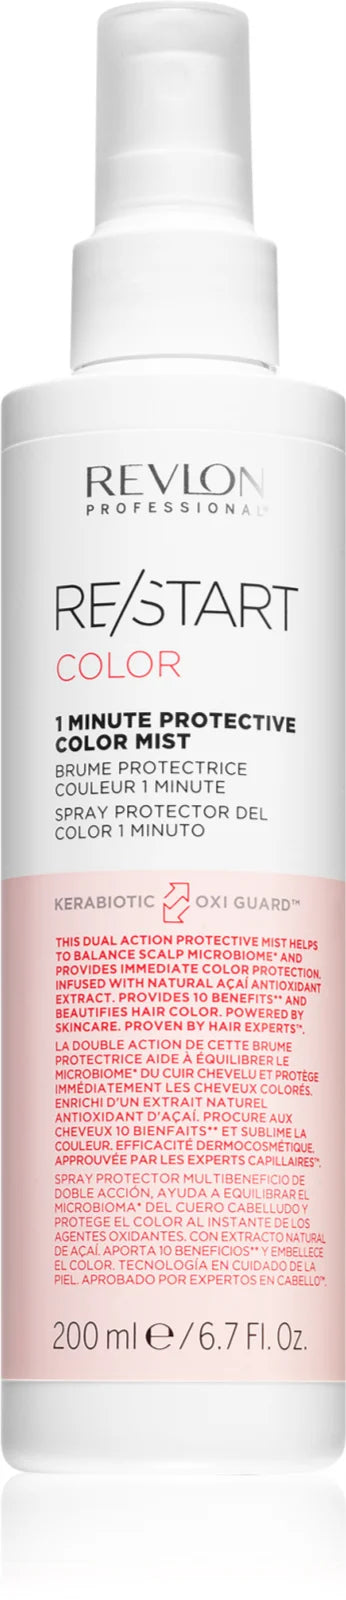 Revlon Re/Start Color 1 Minute Protective Colour Mist 200ml